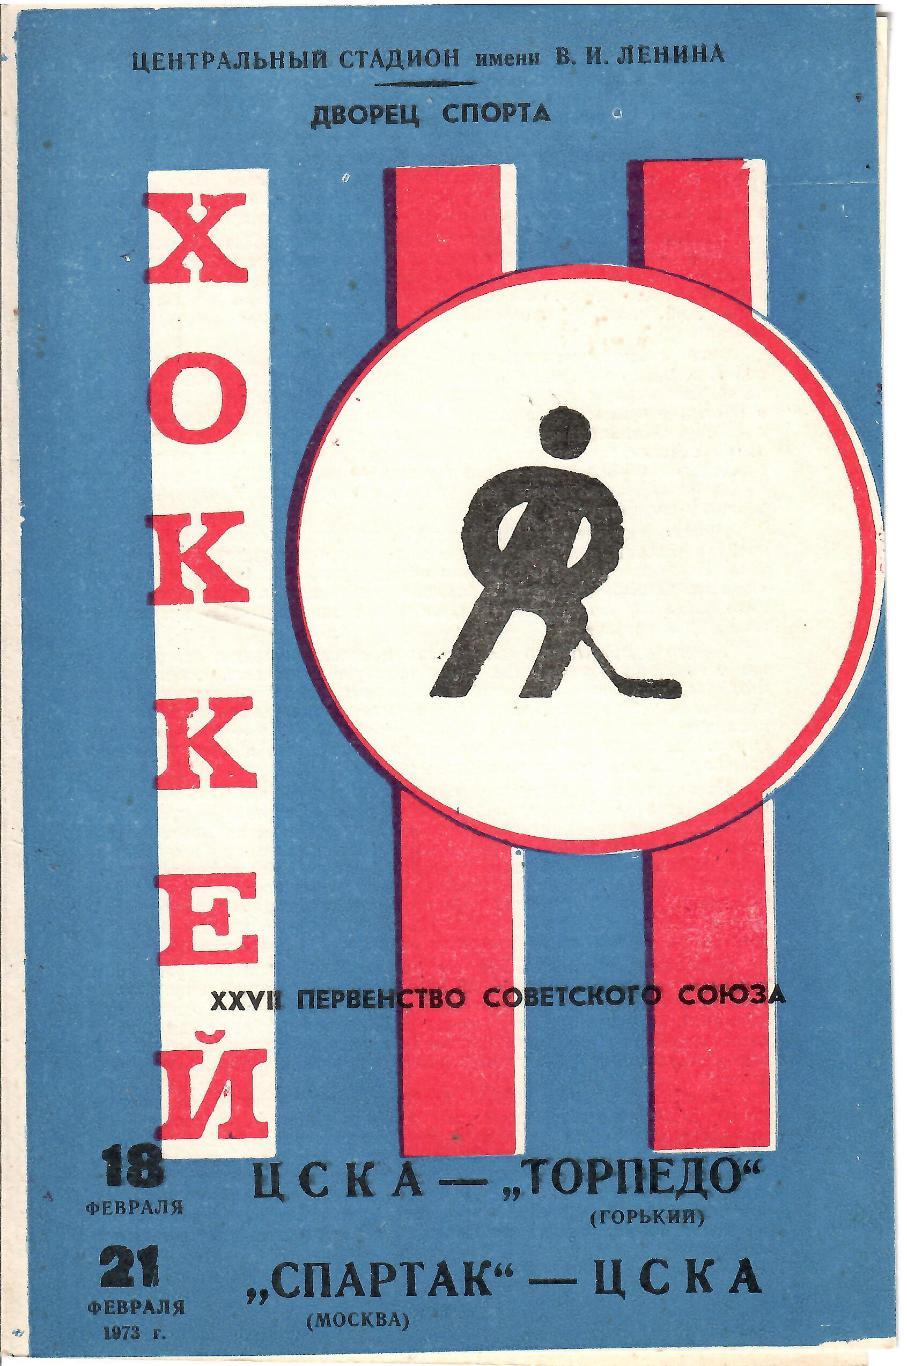 1973 Хоккей ЦСКА - Торпедо Горький - Спартак Москва